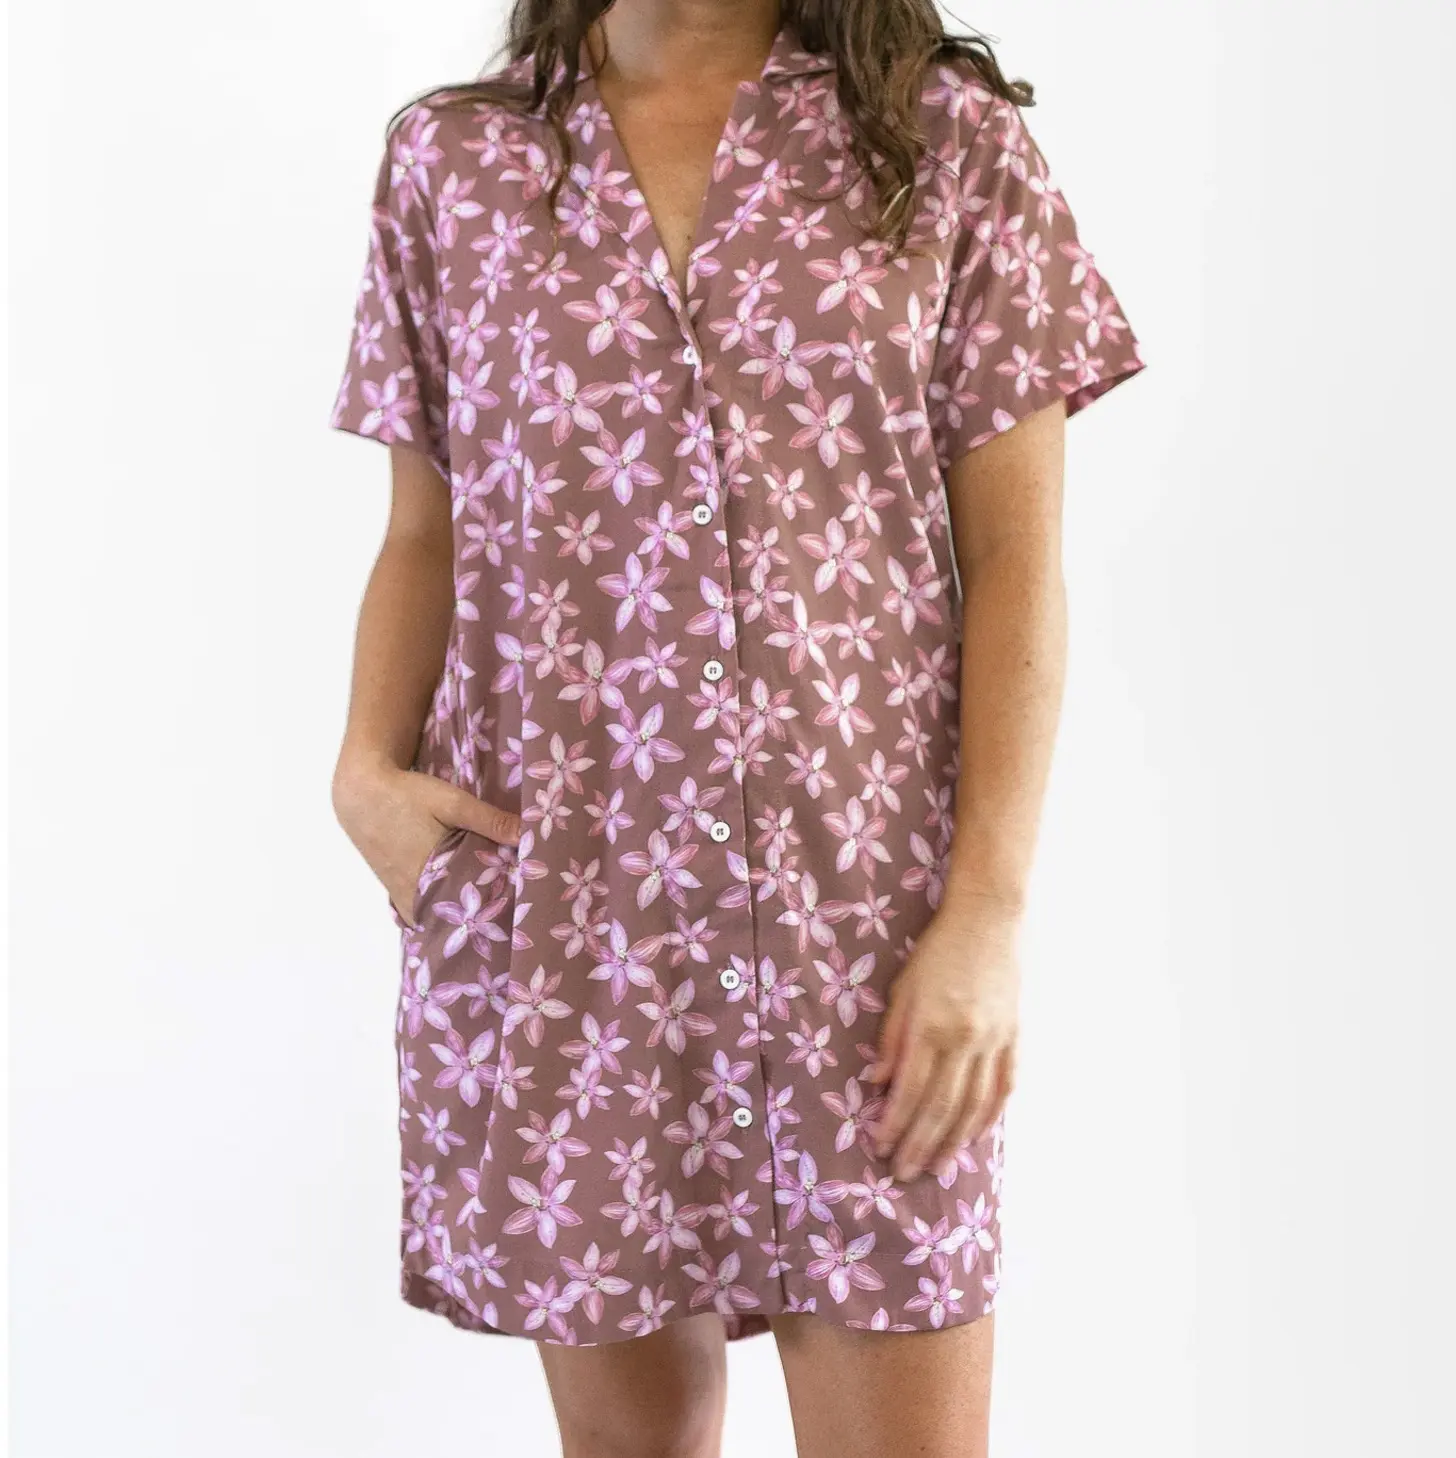 EE. UU. Venta caliente rayón mujeres camiseta vestido personalizado su diseño imprime botón Arriba camisa vestido